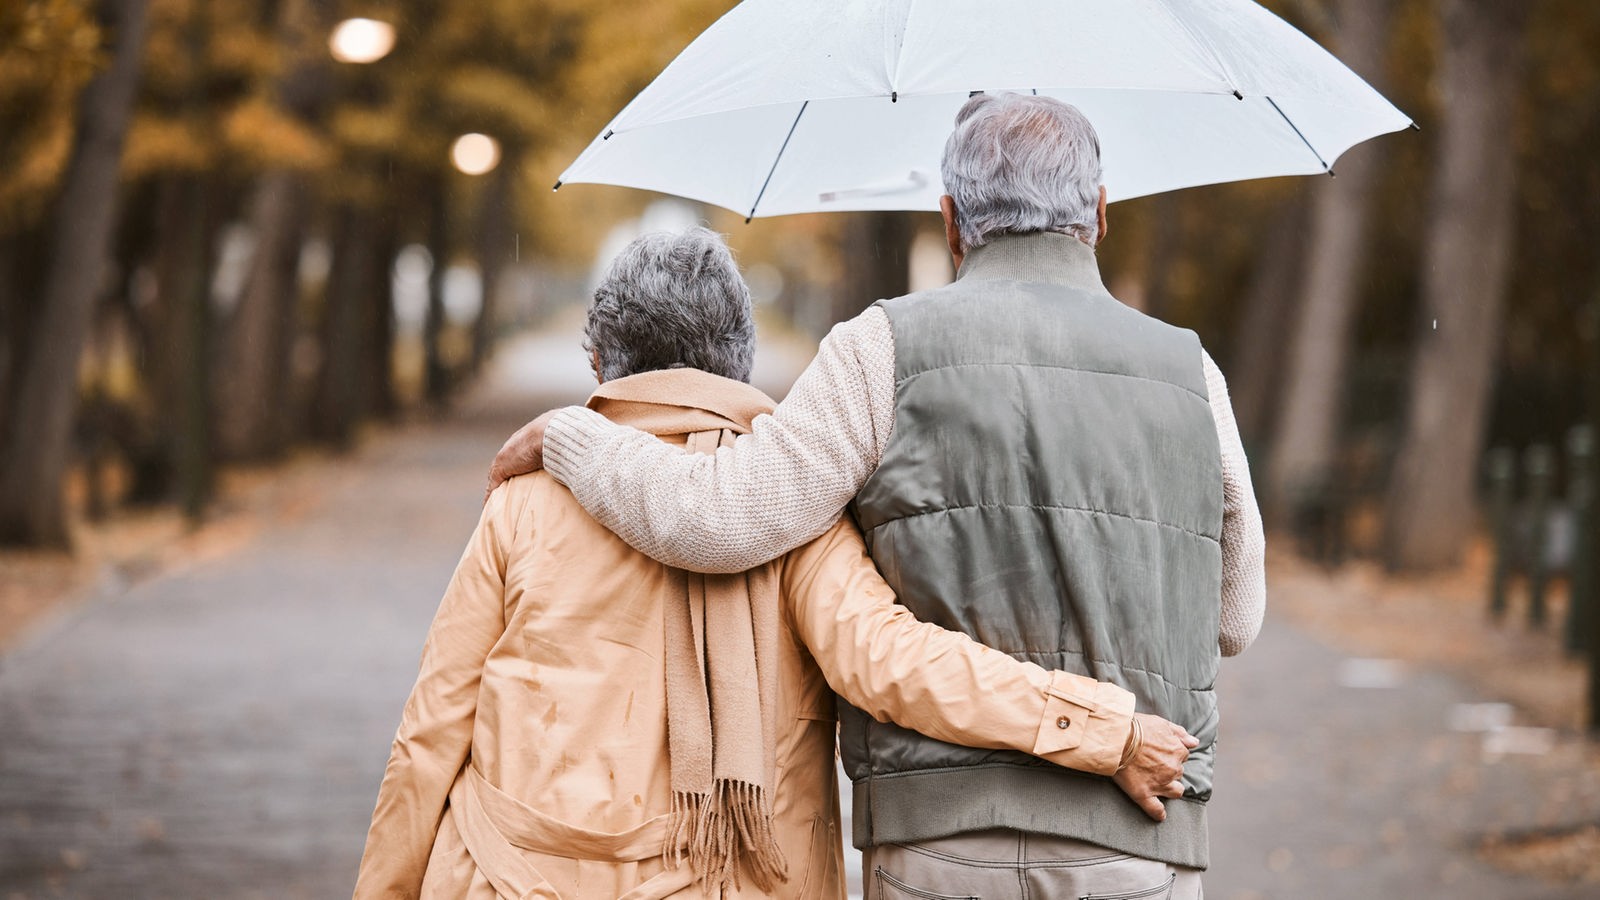 Das Bild zeigt ein älteres Paar mit Regenschirm bei einem Spaziergang im Regen.